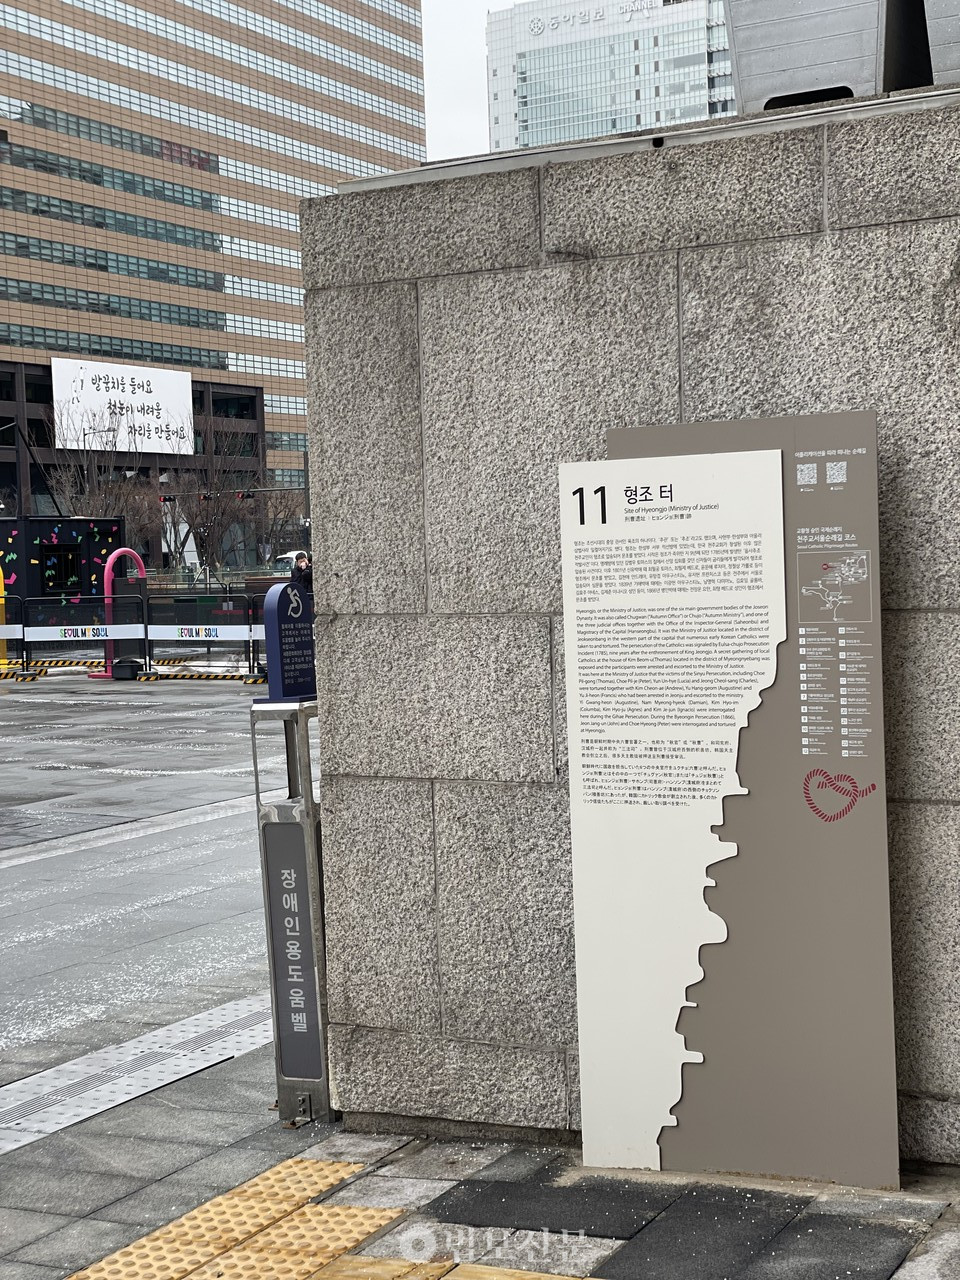 2월 5일 촬영한 서울시 광화문광장. 여전히 해결해야할 과제가 남아있다. 광장 한복판의 한국 천주교 성지 안내판. 